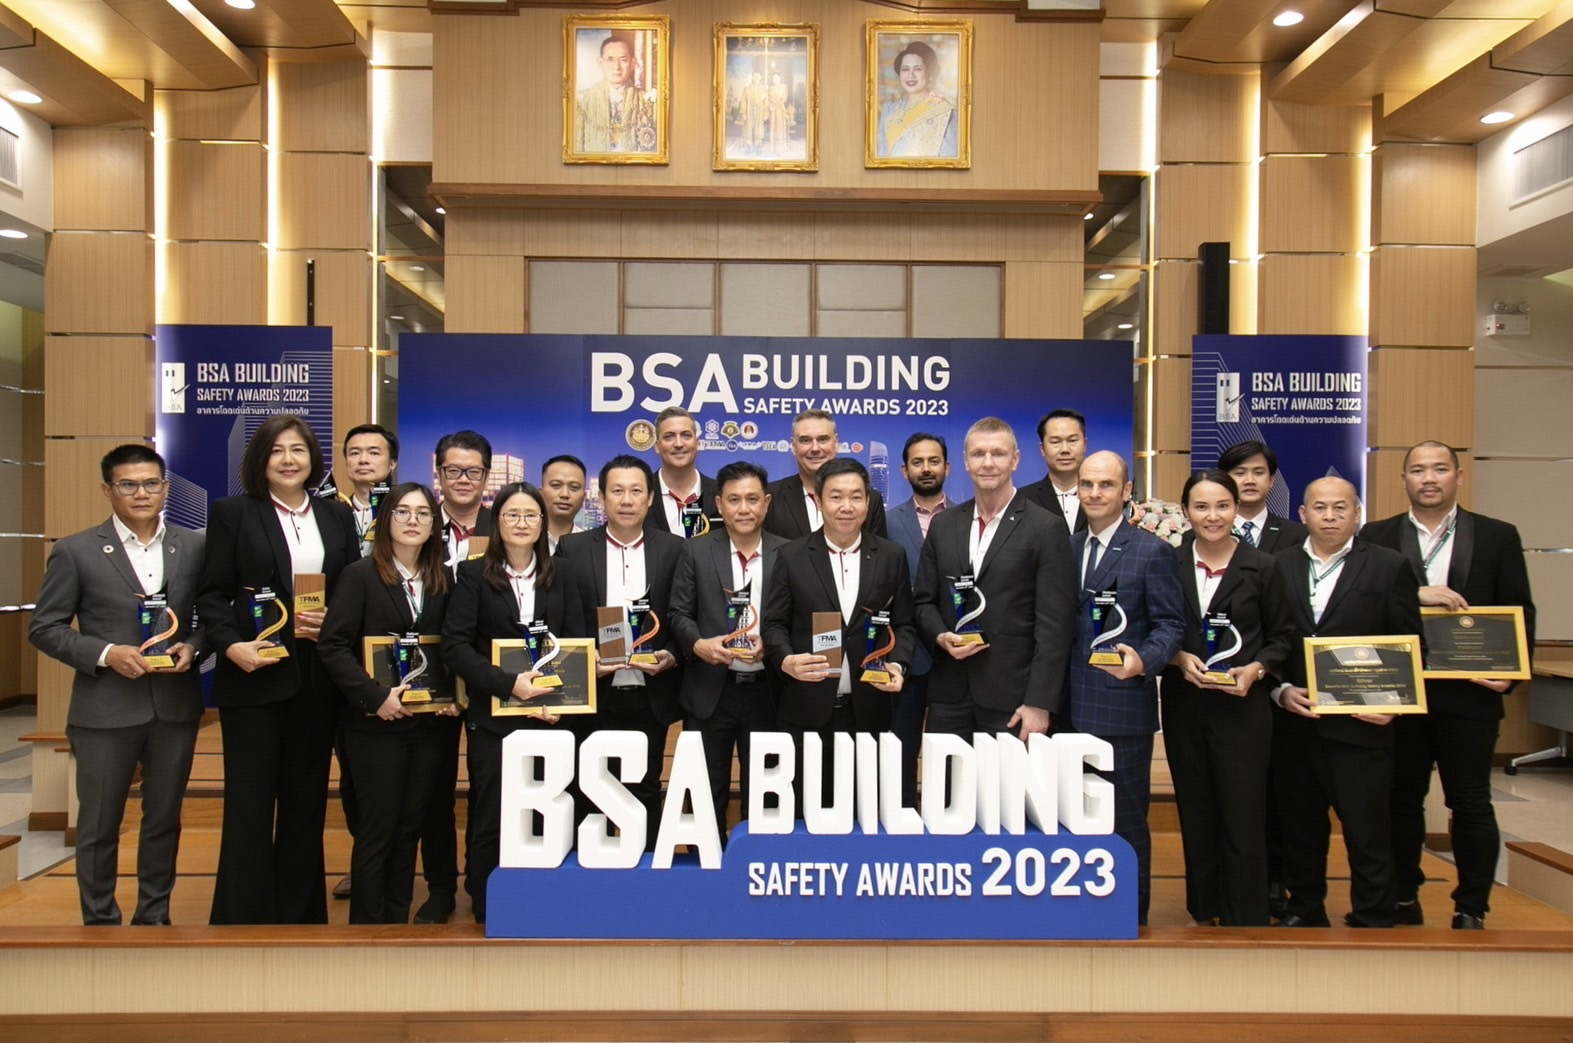 AWC กวาด 23 รางวัล ด้านความเป็นเลิศในการบริหารจัดการอาคาร จาก BSA Building Safety Awards 2023